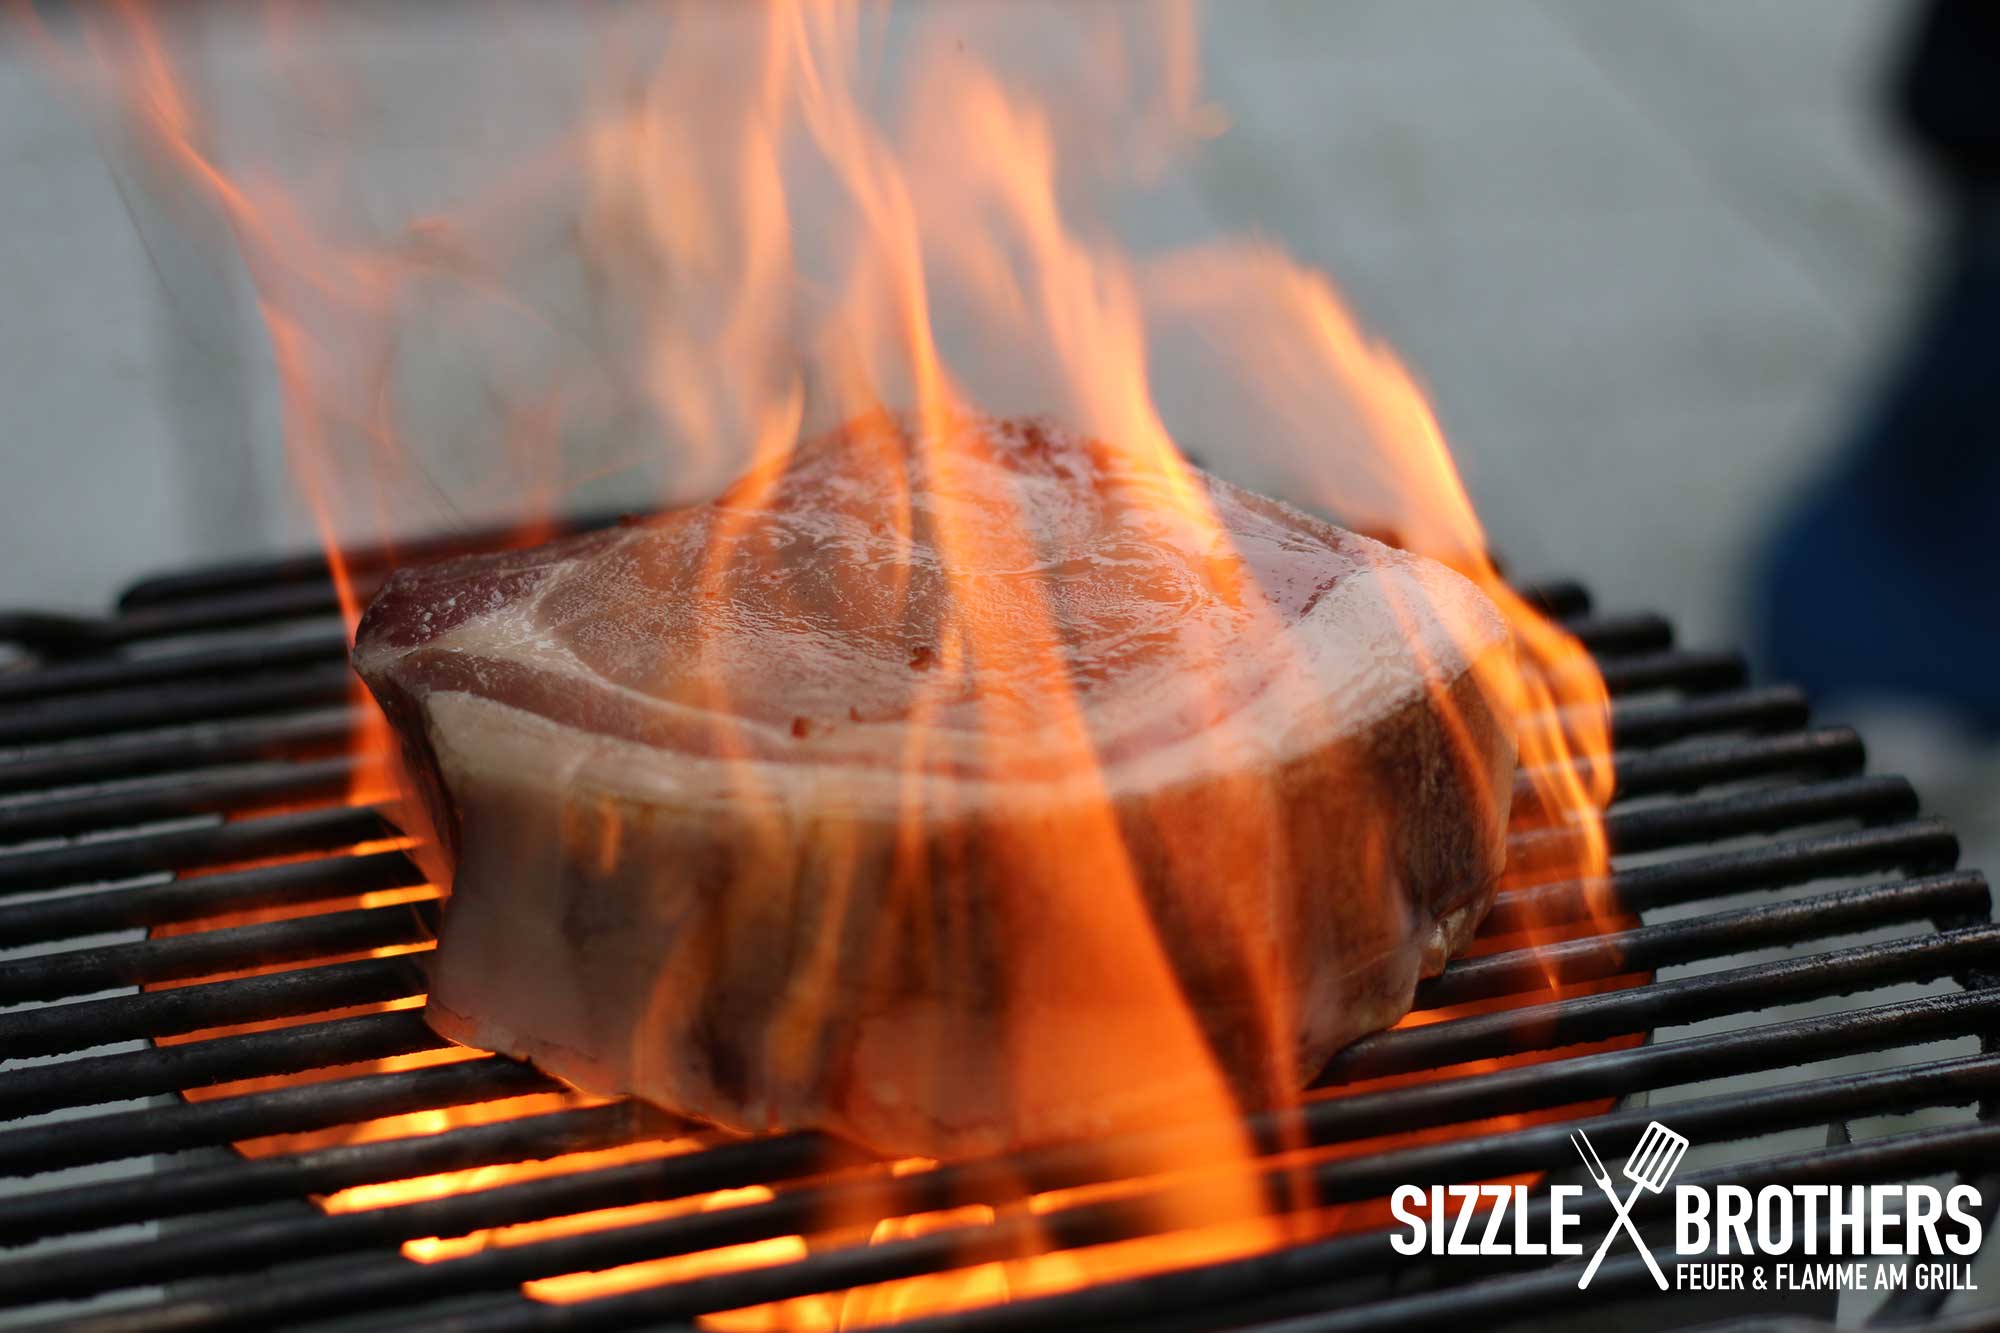 Die Flammen züngeln um das AZK Steak herum